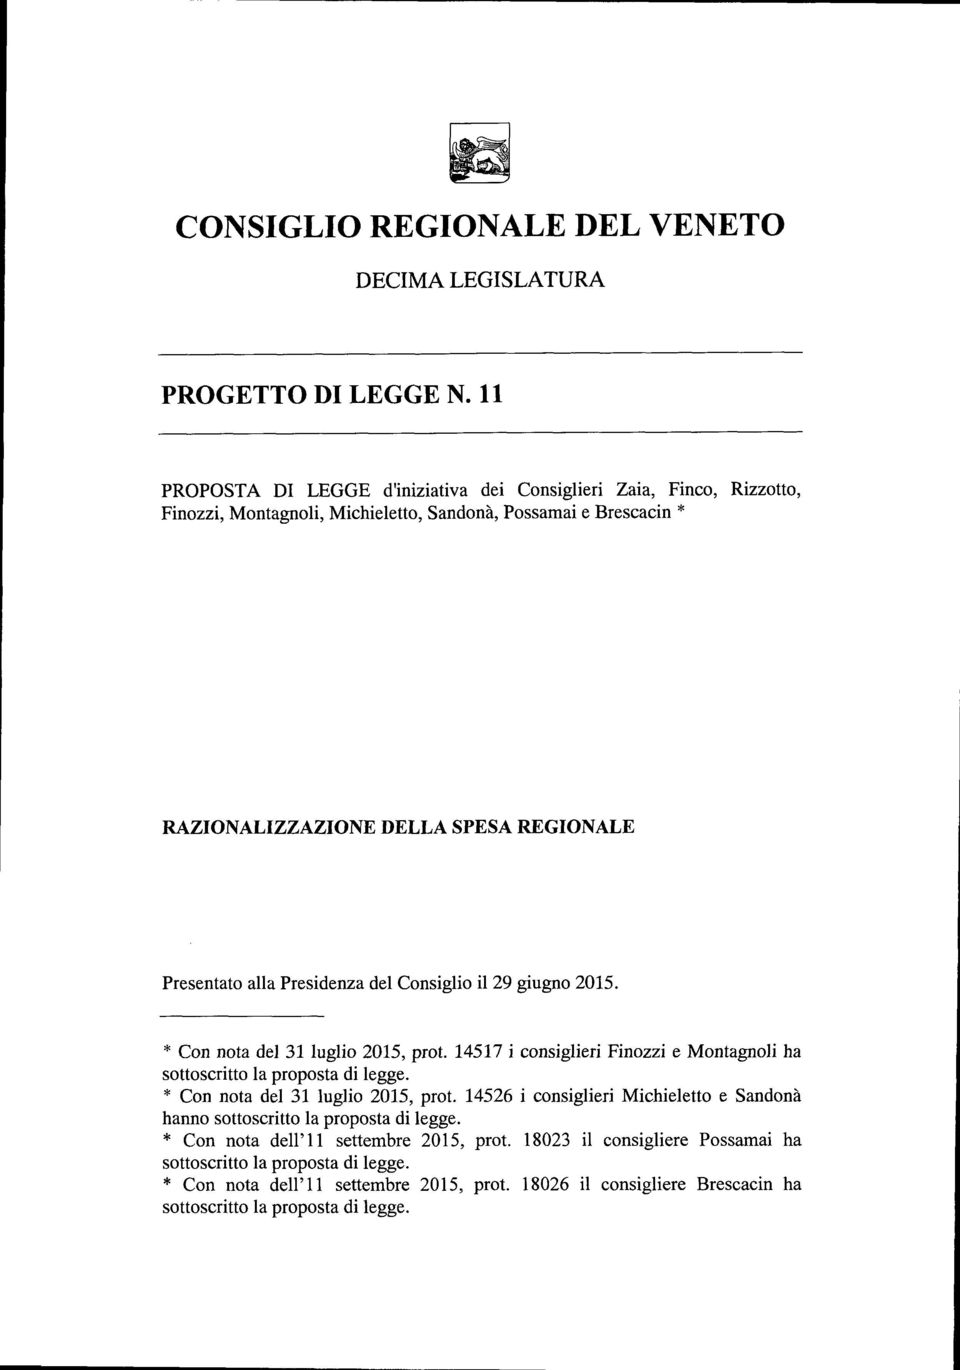 alla Presidenza del Consiglio il 29 giugno 2015. * Con nota del 31 luglio 2015, prot. 14517 i consiglieri Finozzi e Montagnoli ha sottoscritto la proposta di legge.